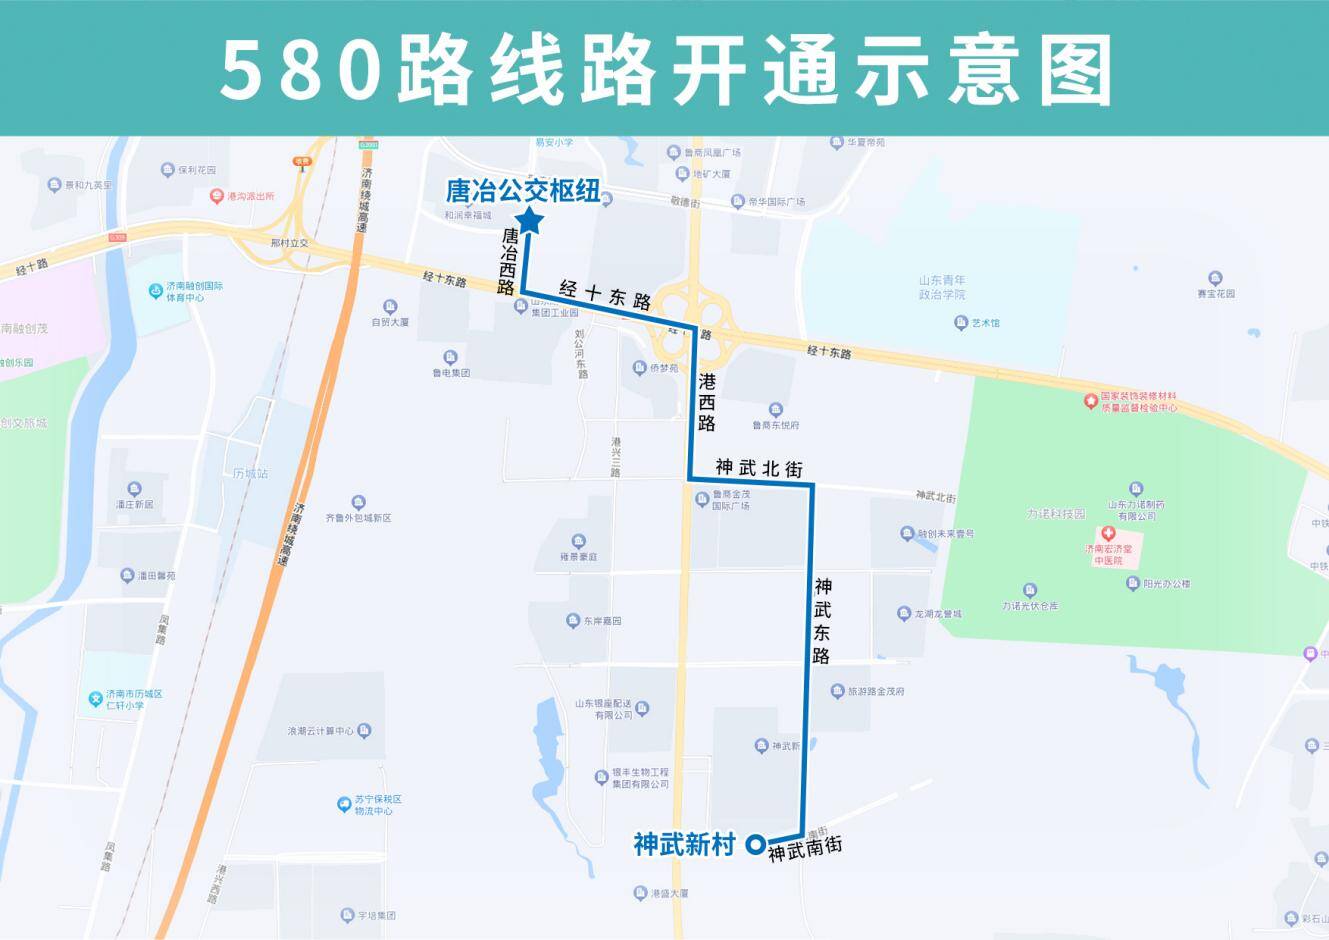 神武片区部分路段公交空白，11月25日起济南公交开通试运行580路线